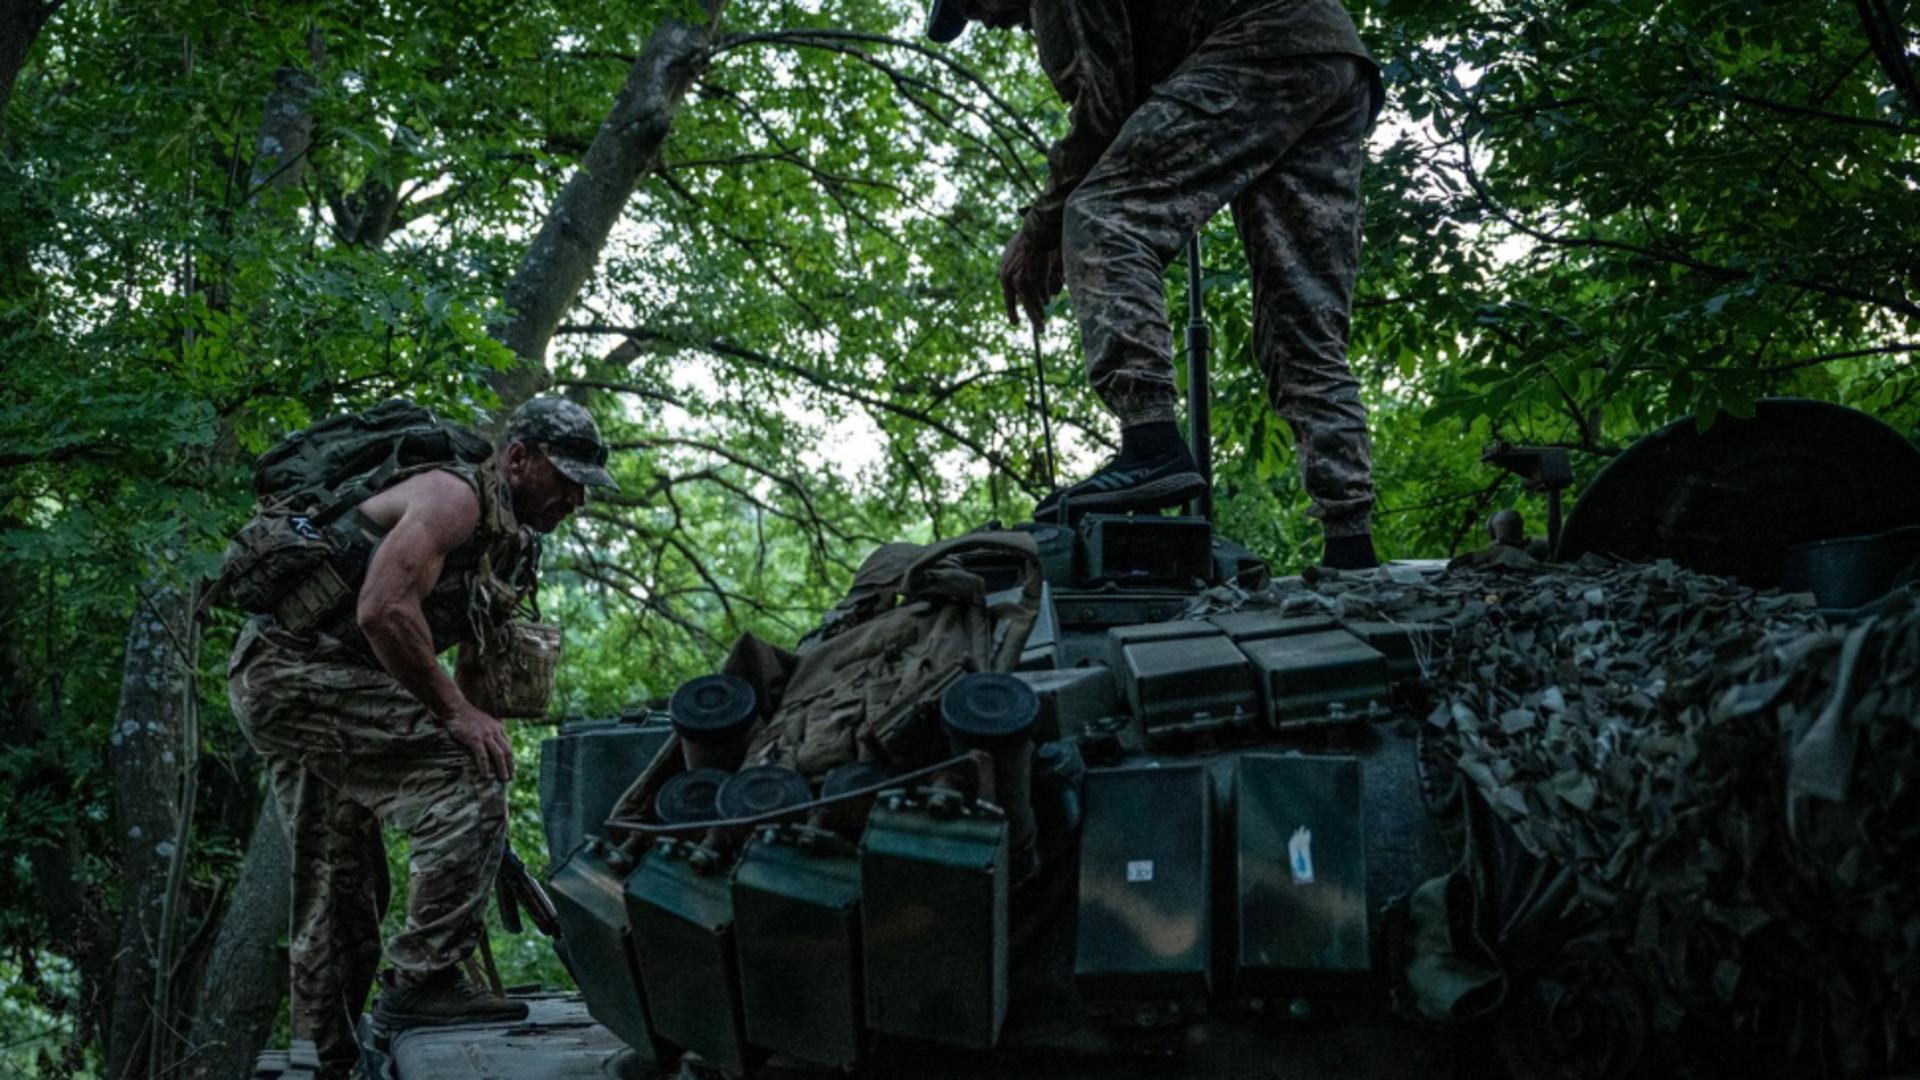 Rușii au prezentat „captura de război” din Ucraina de la începutul conflictului până în prezent. Foto: Profimedia